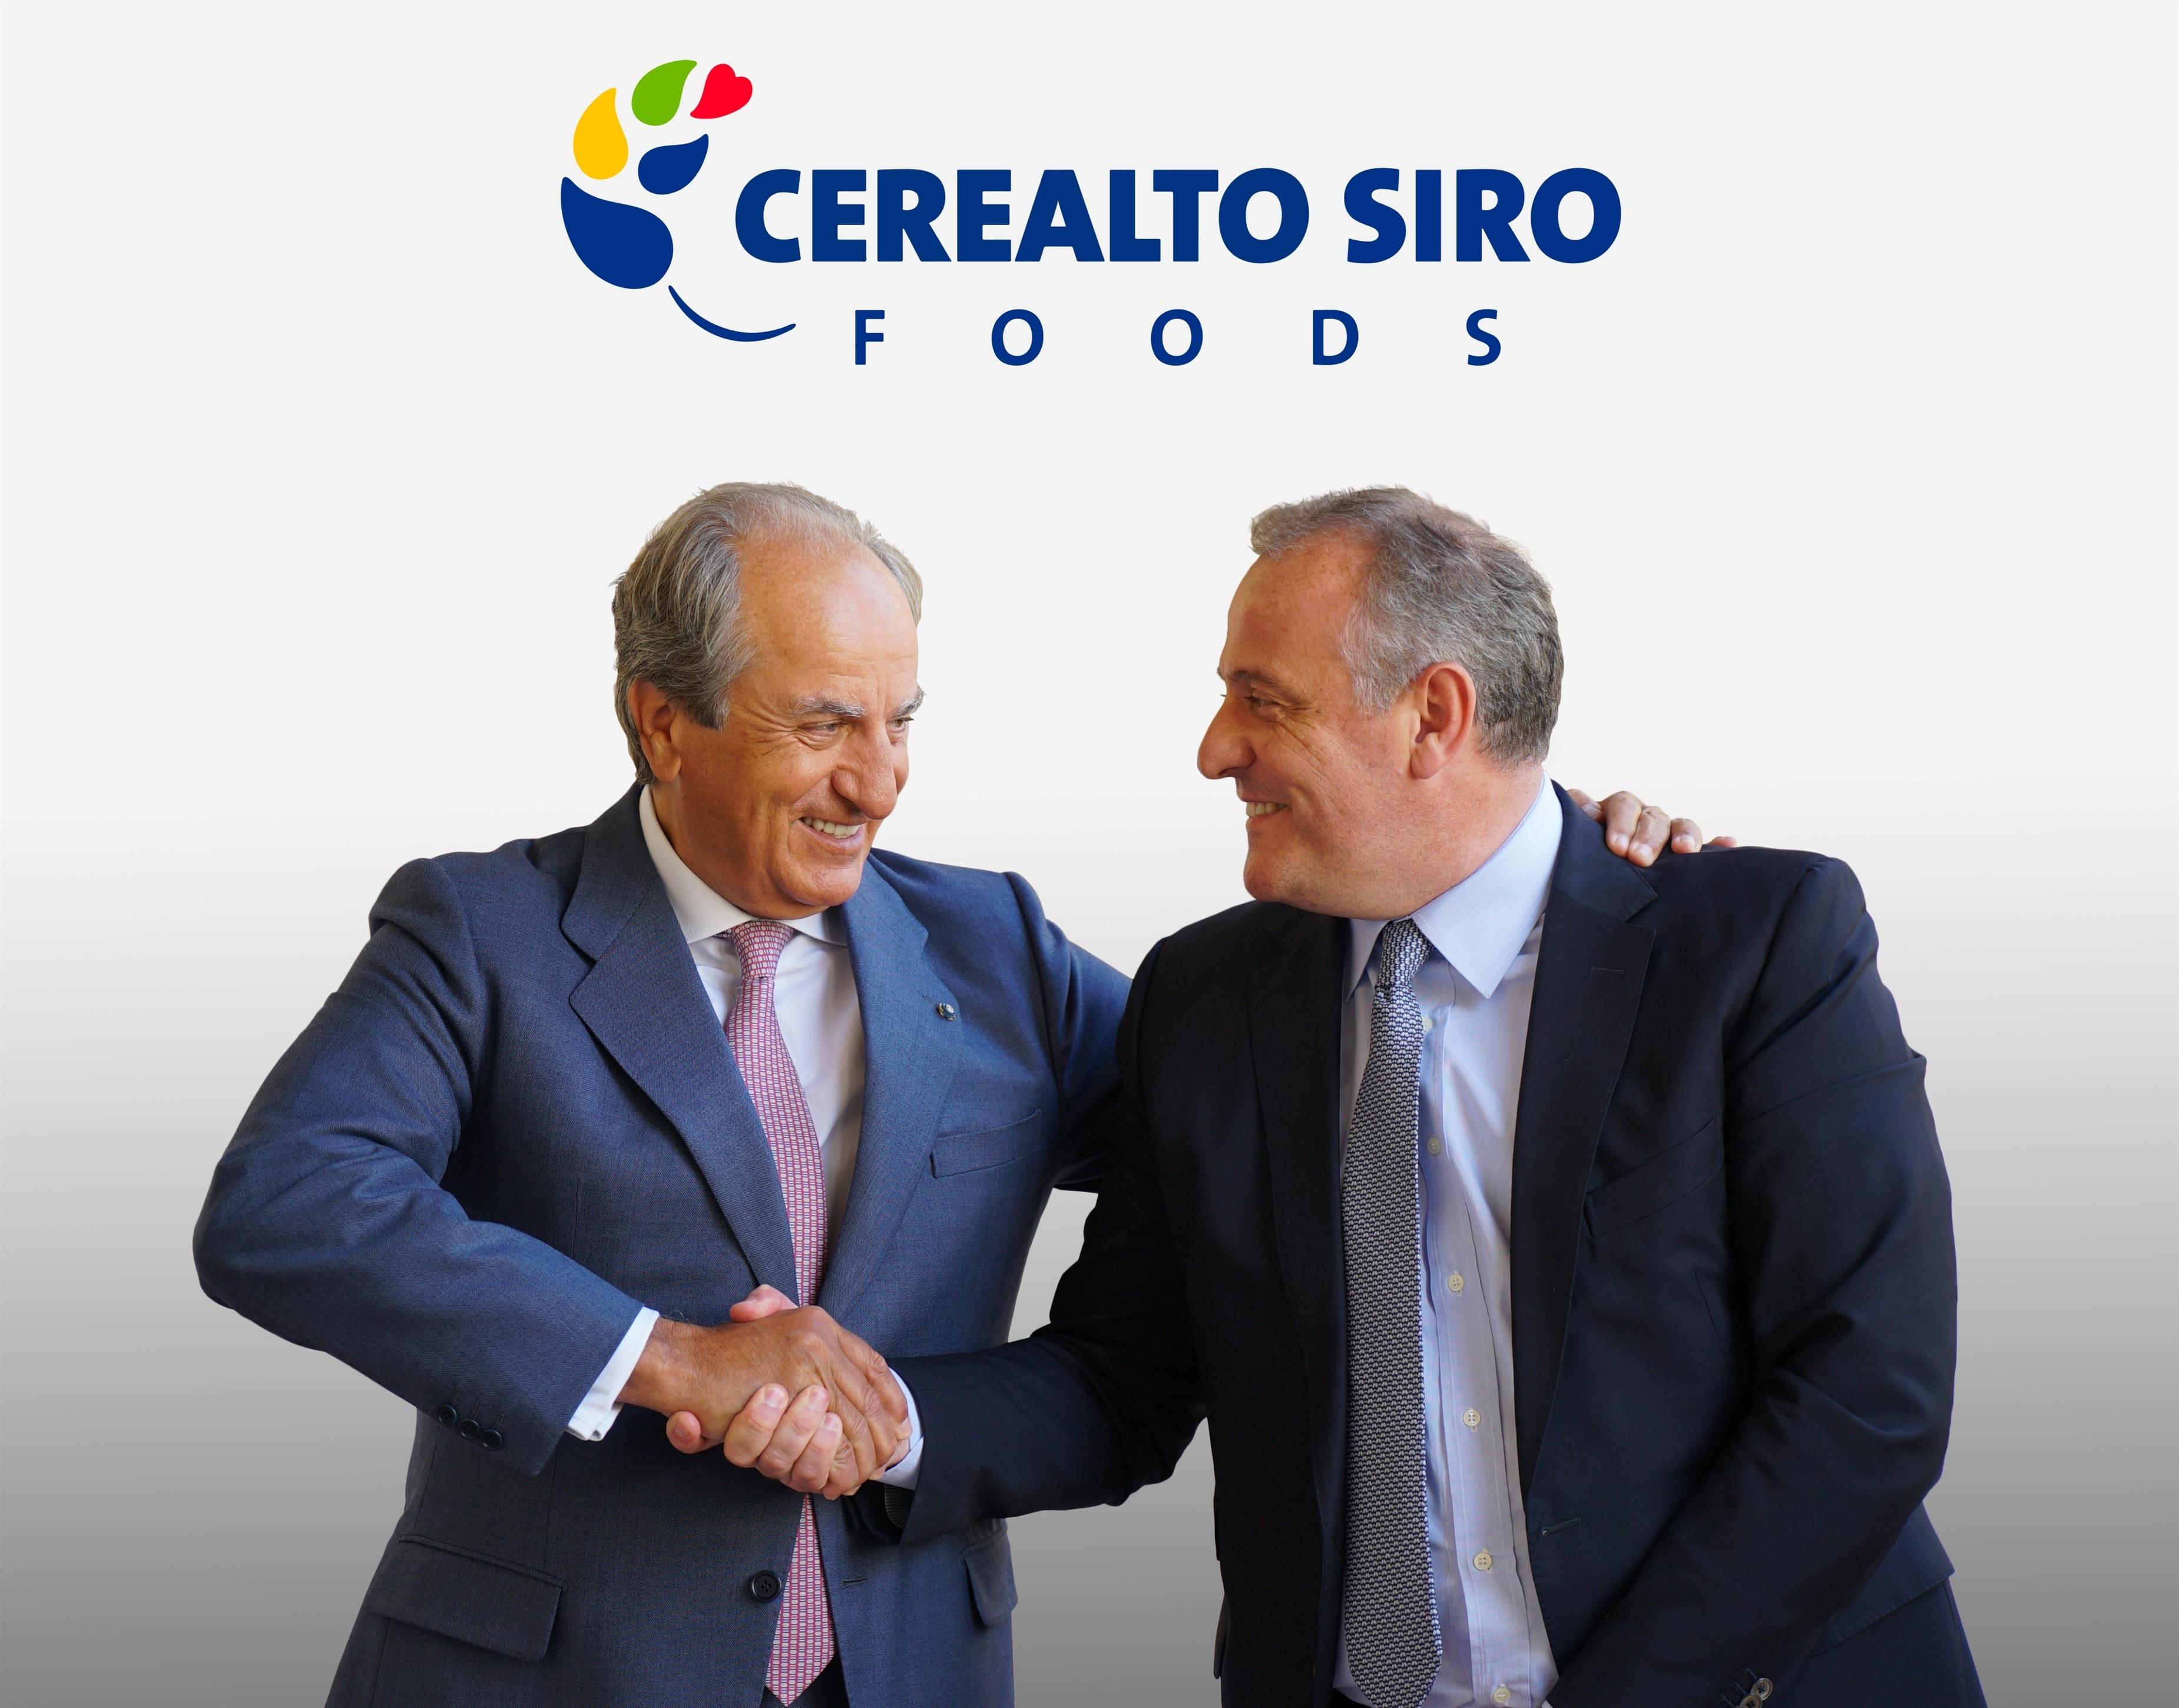 Acuerdo de Siro y Cerealto para crear un nuevo grupo con una facturación de más de 600 millones - Europa Press